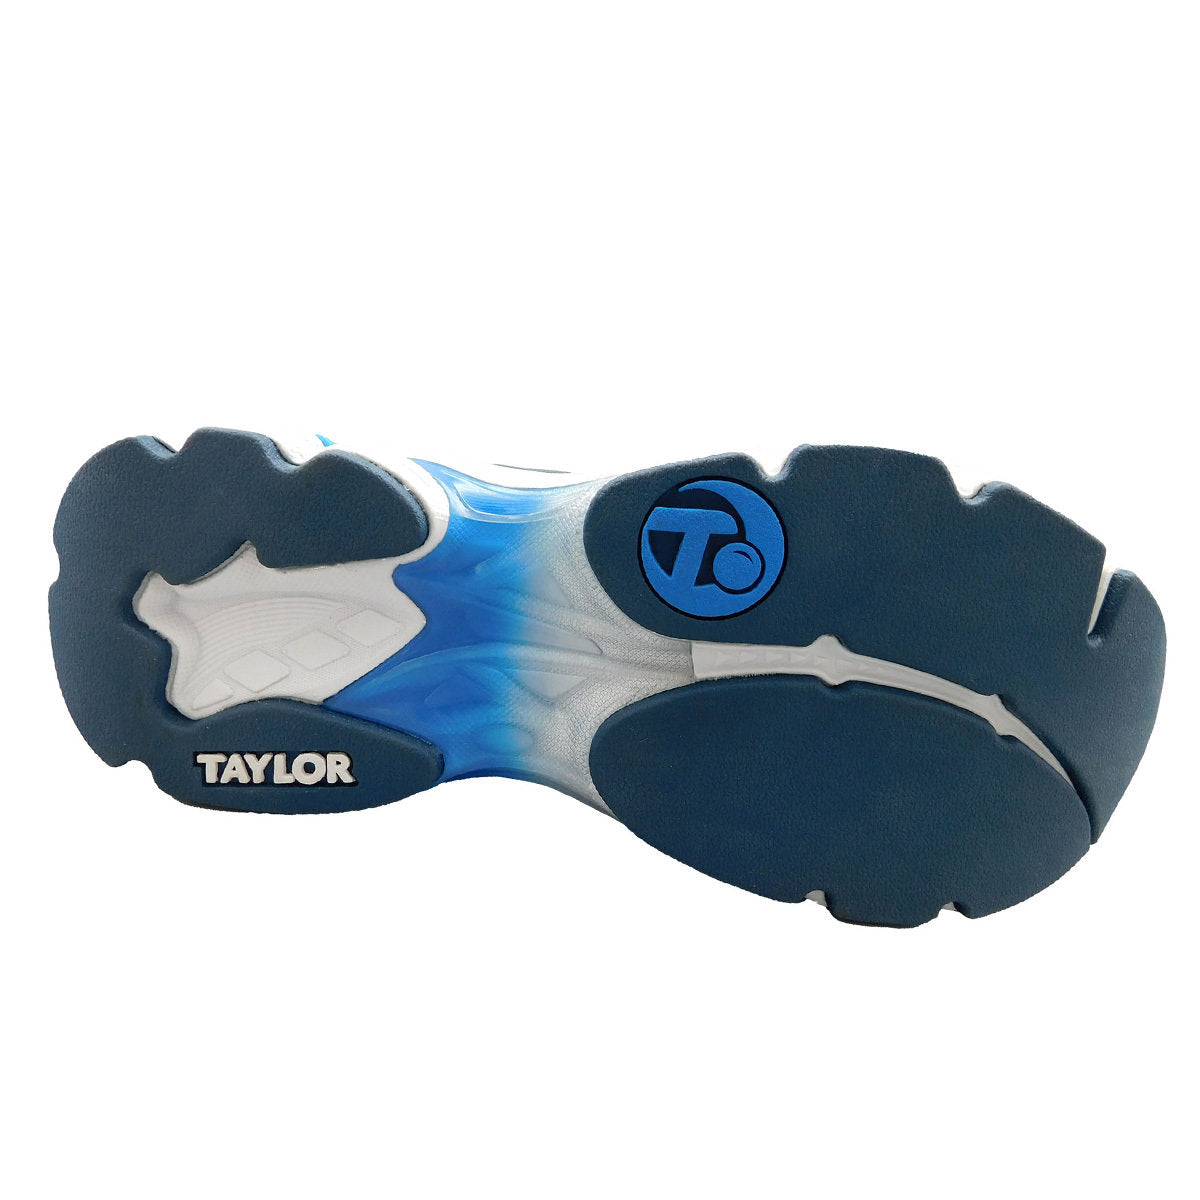 Taylor Bowls Matrix uni-sex lawn bowls shoe Slate Blue